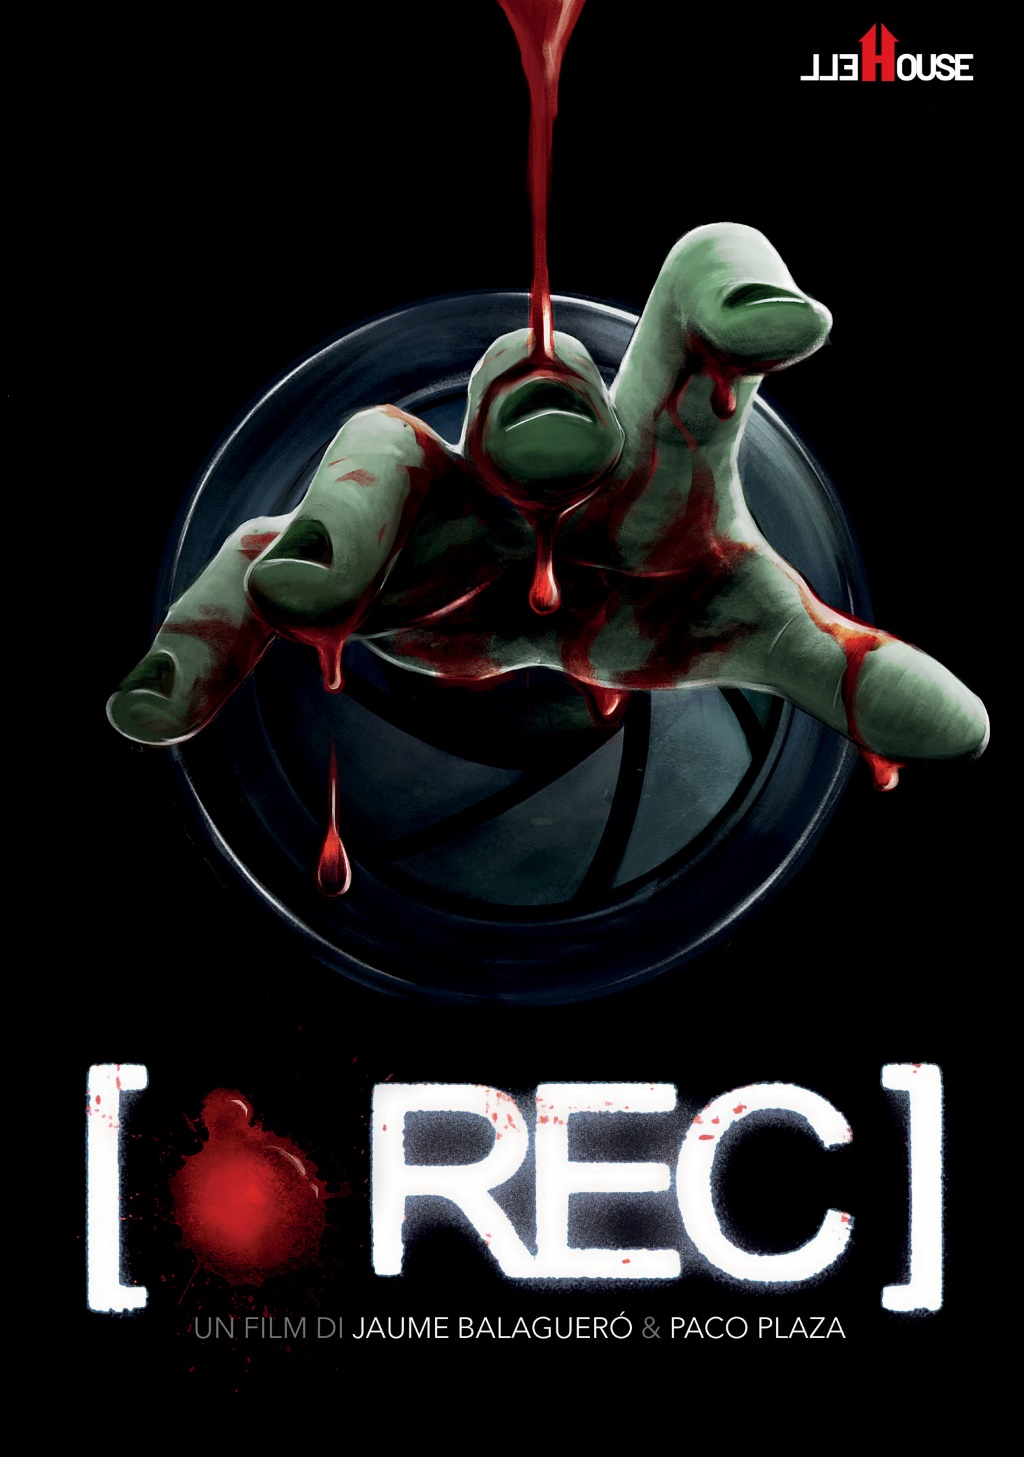 REC – La paura in diretta [HD] (2007)